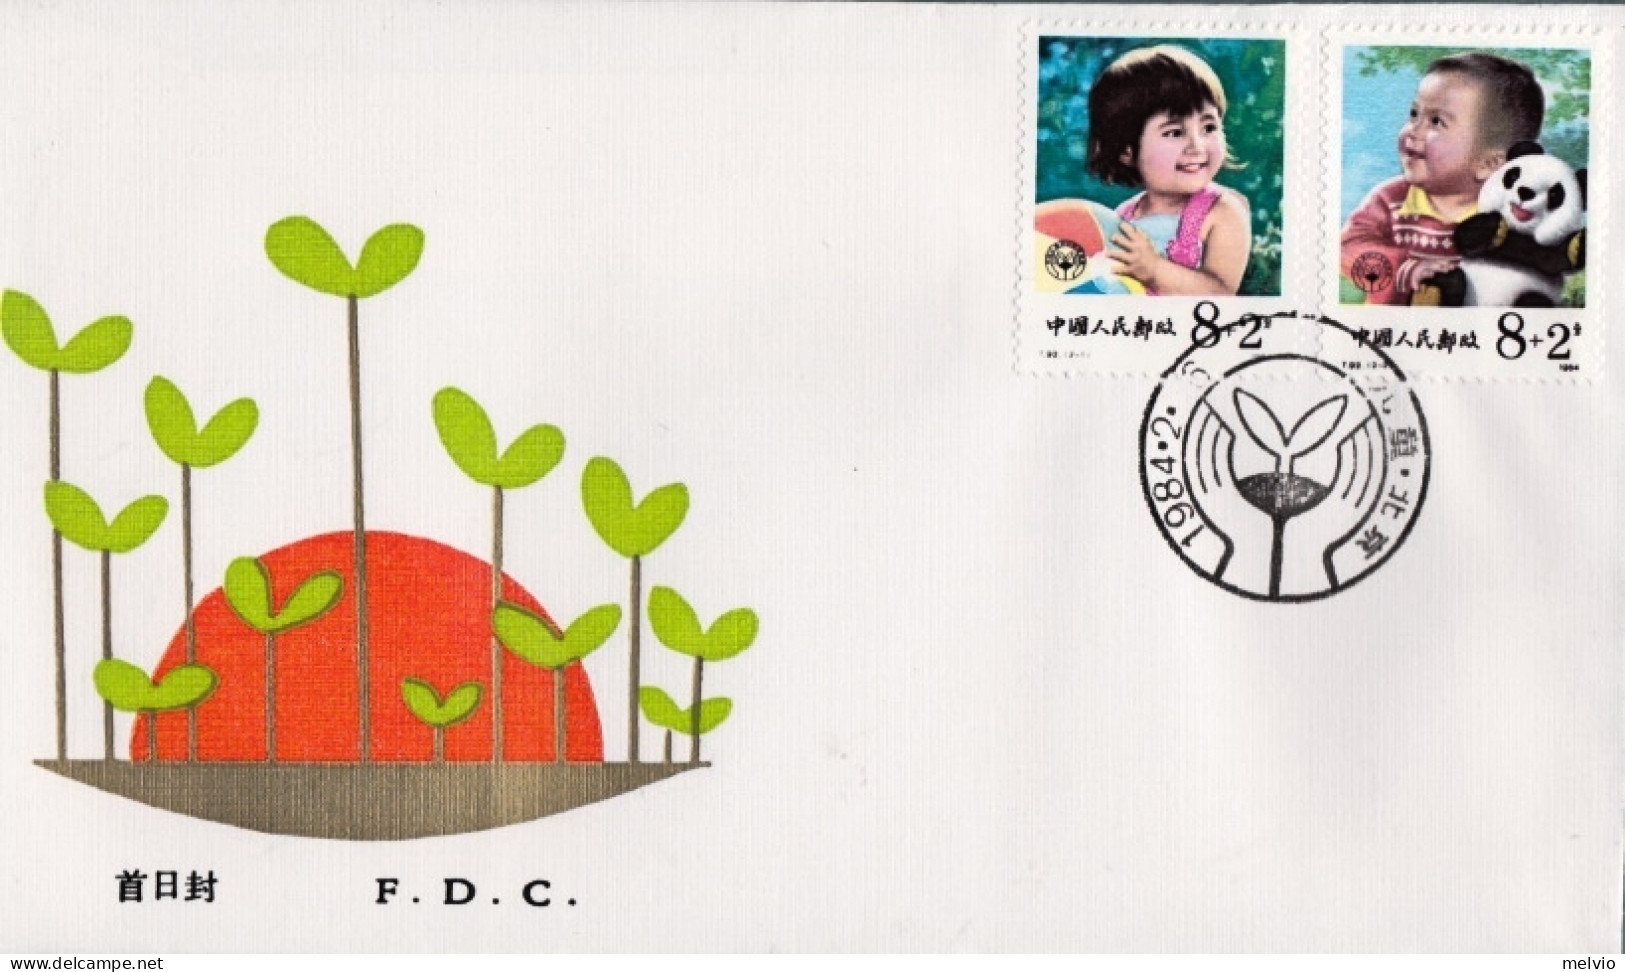 1984-Cina China T92 Children Welfare (Semi Postal Stamps) Fdc - Briefe U. Dokumente